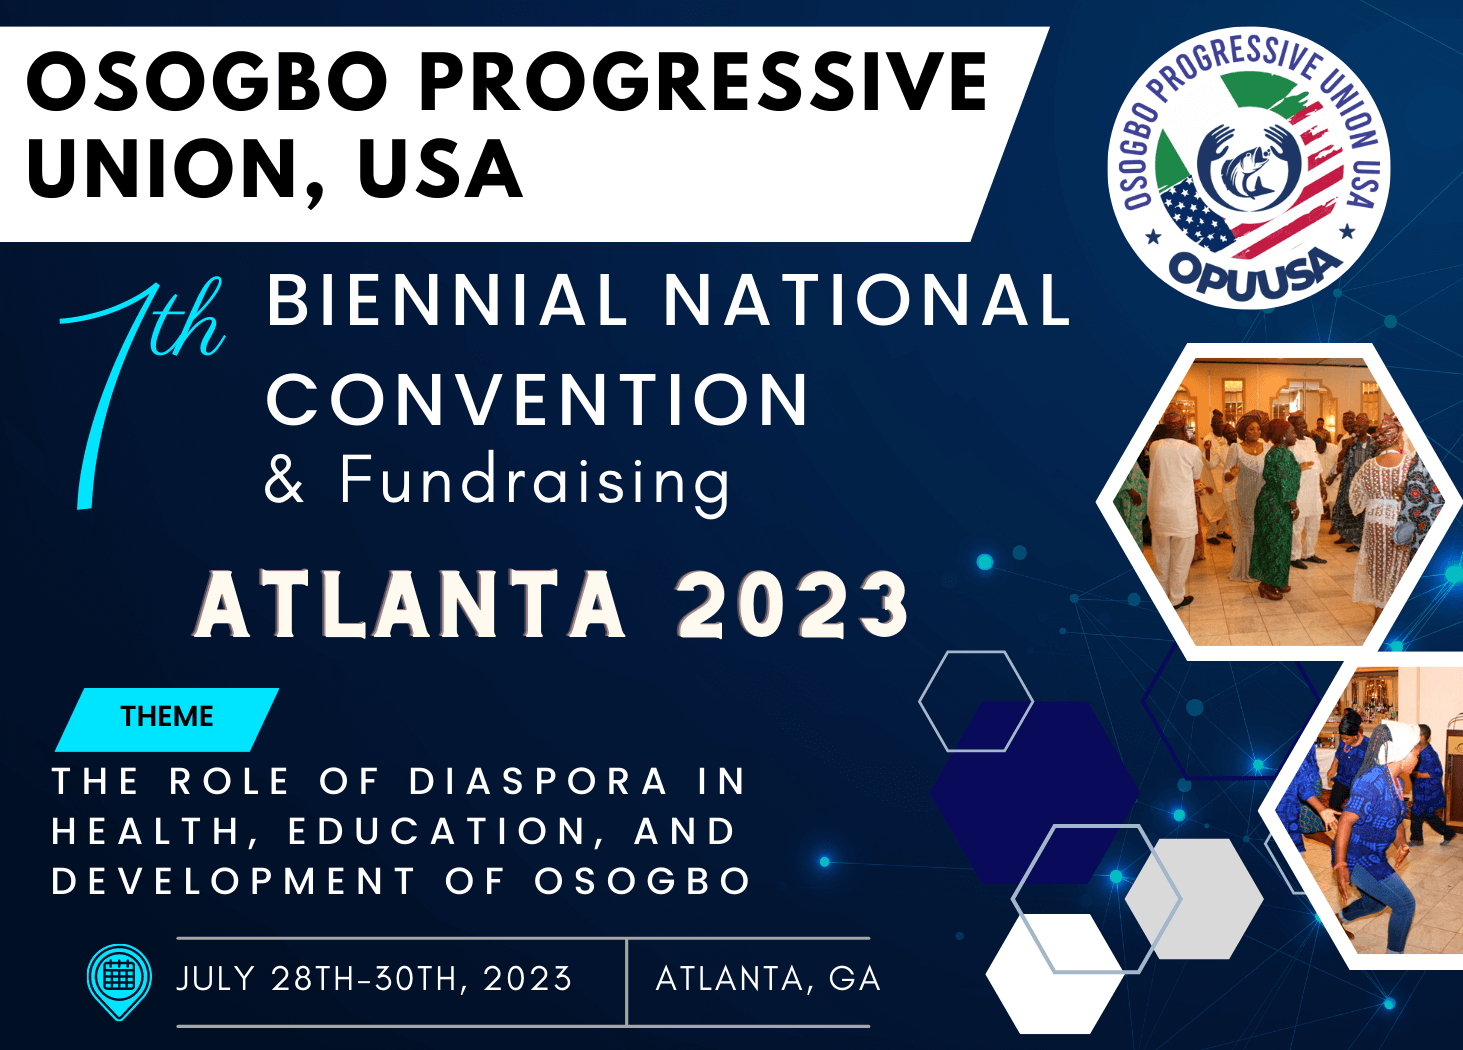 OPU-USA 7th Biennial NATIONAL Convention- ATLANTA 2023